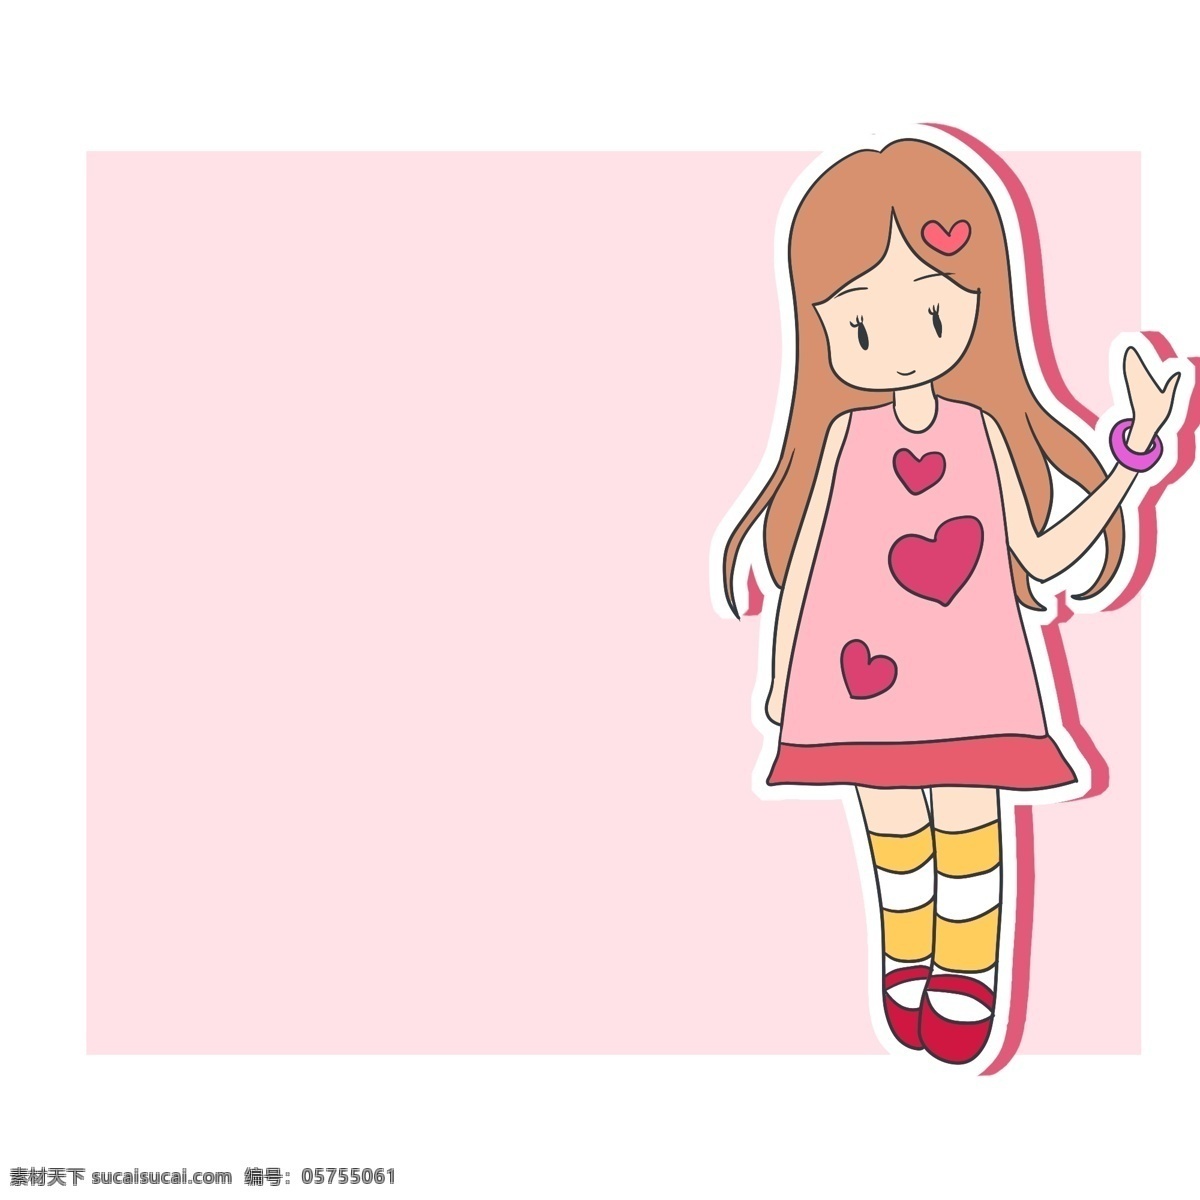 小女孩 爱心 边框 插画 小女孩边框 人物边框 爱心边框 粉色的边框 立体边框 创意边框 手绘边框 卡通边框